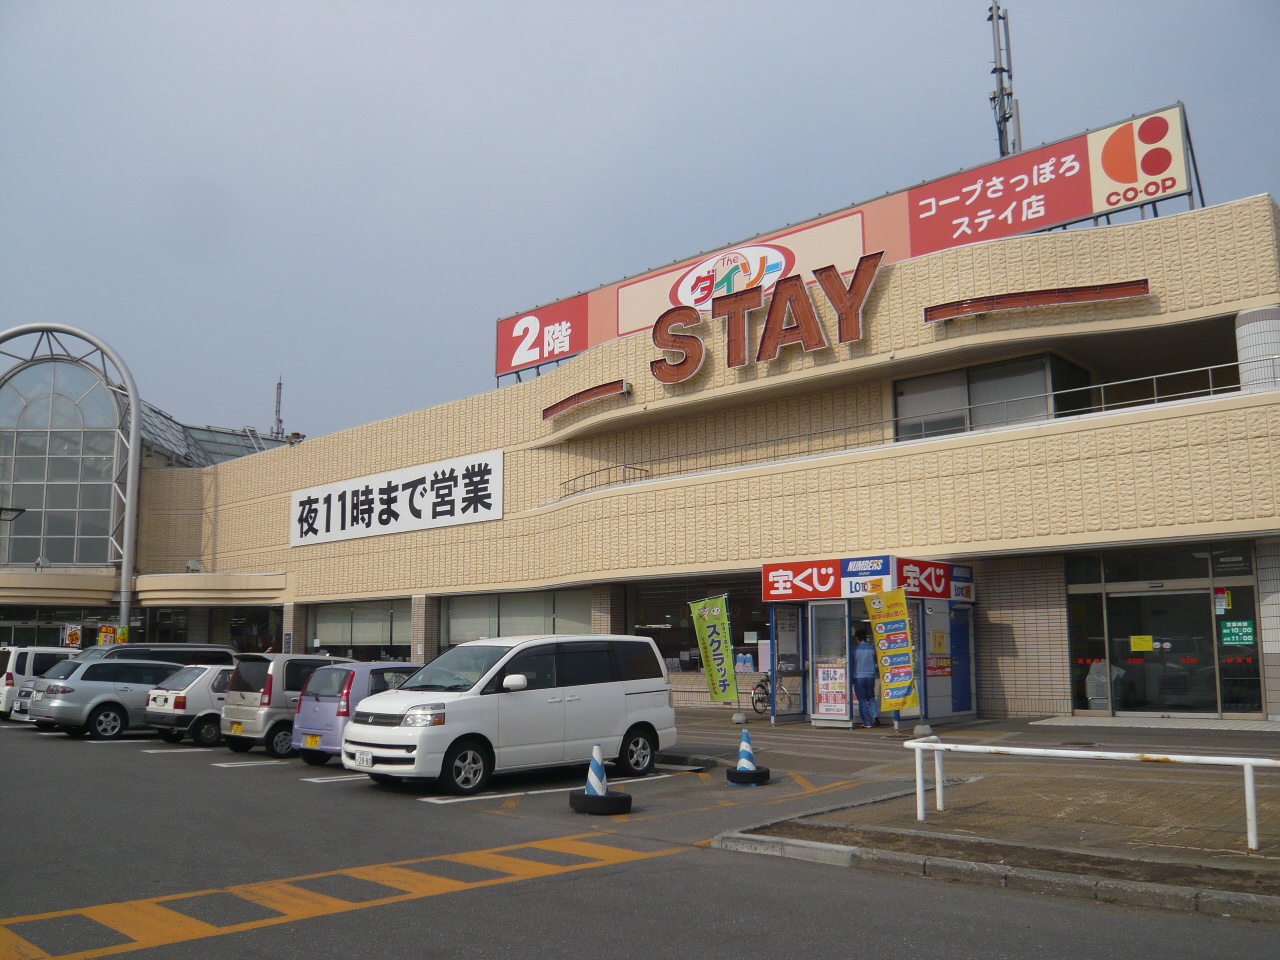 Supermarket. 1364m until KopuSapporo Stay store (Super)